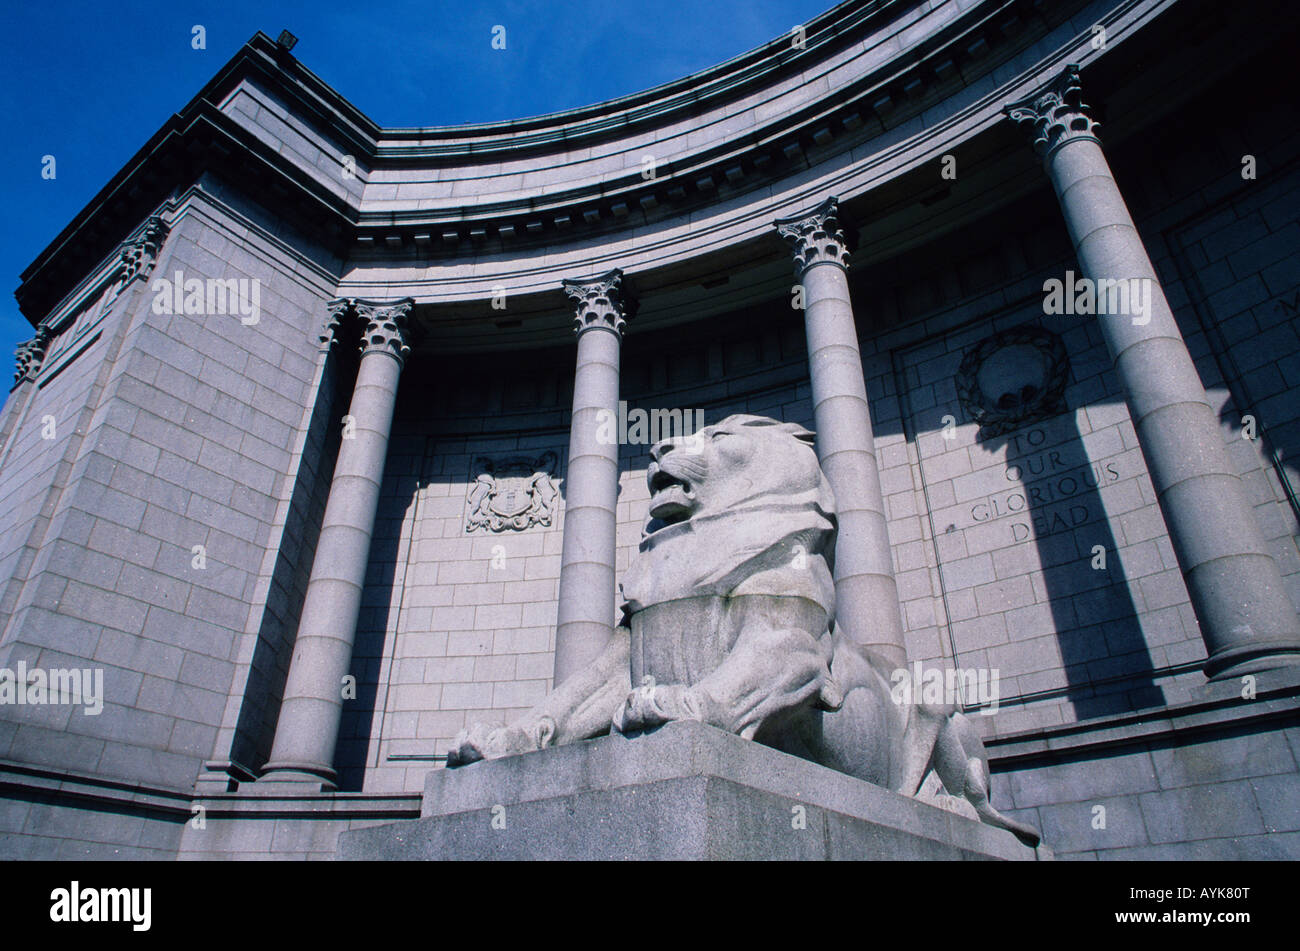 Galerie d'art néo-classique avec statue du lion, Schoolhill, Aberdeen, Grampian, Écosse Banque D'Images